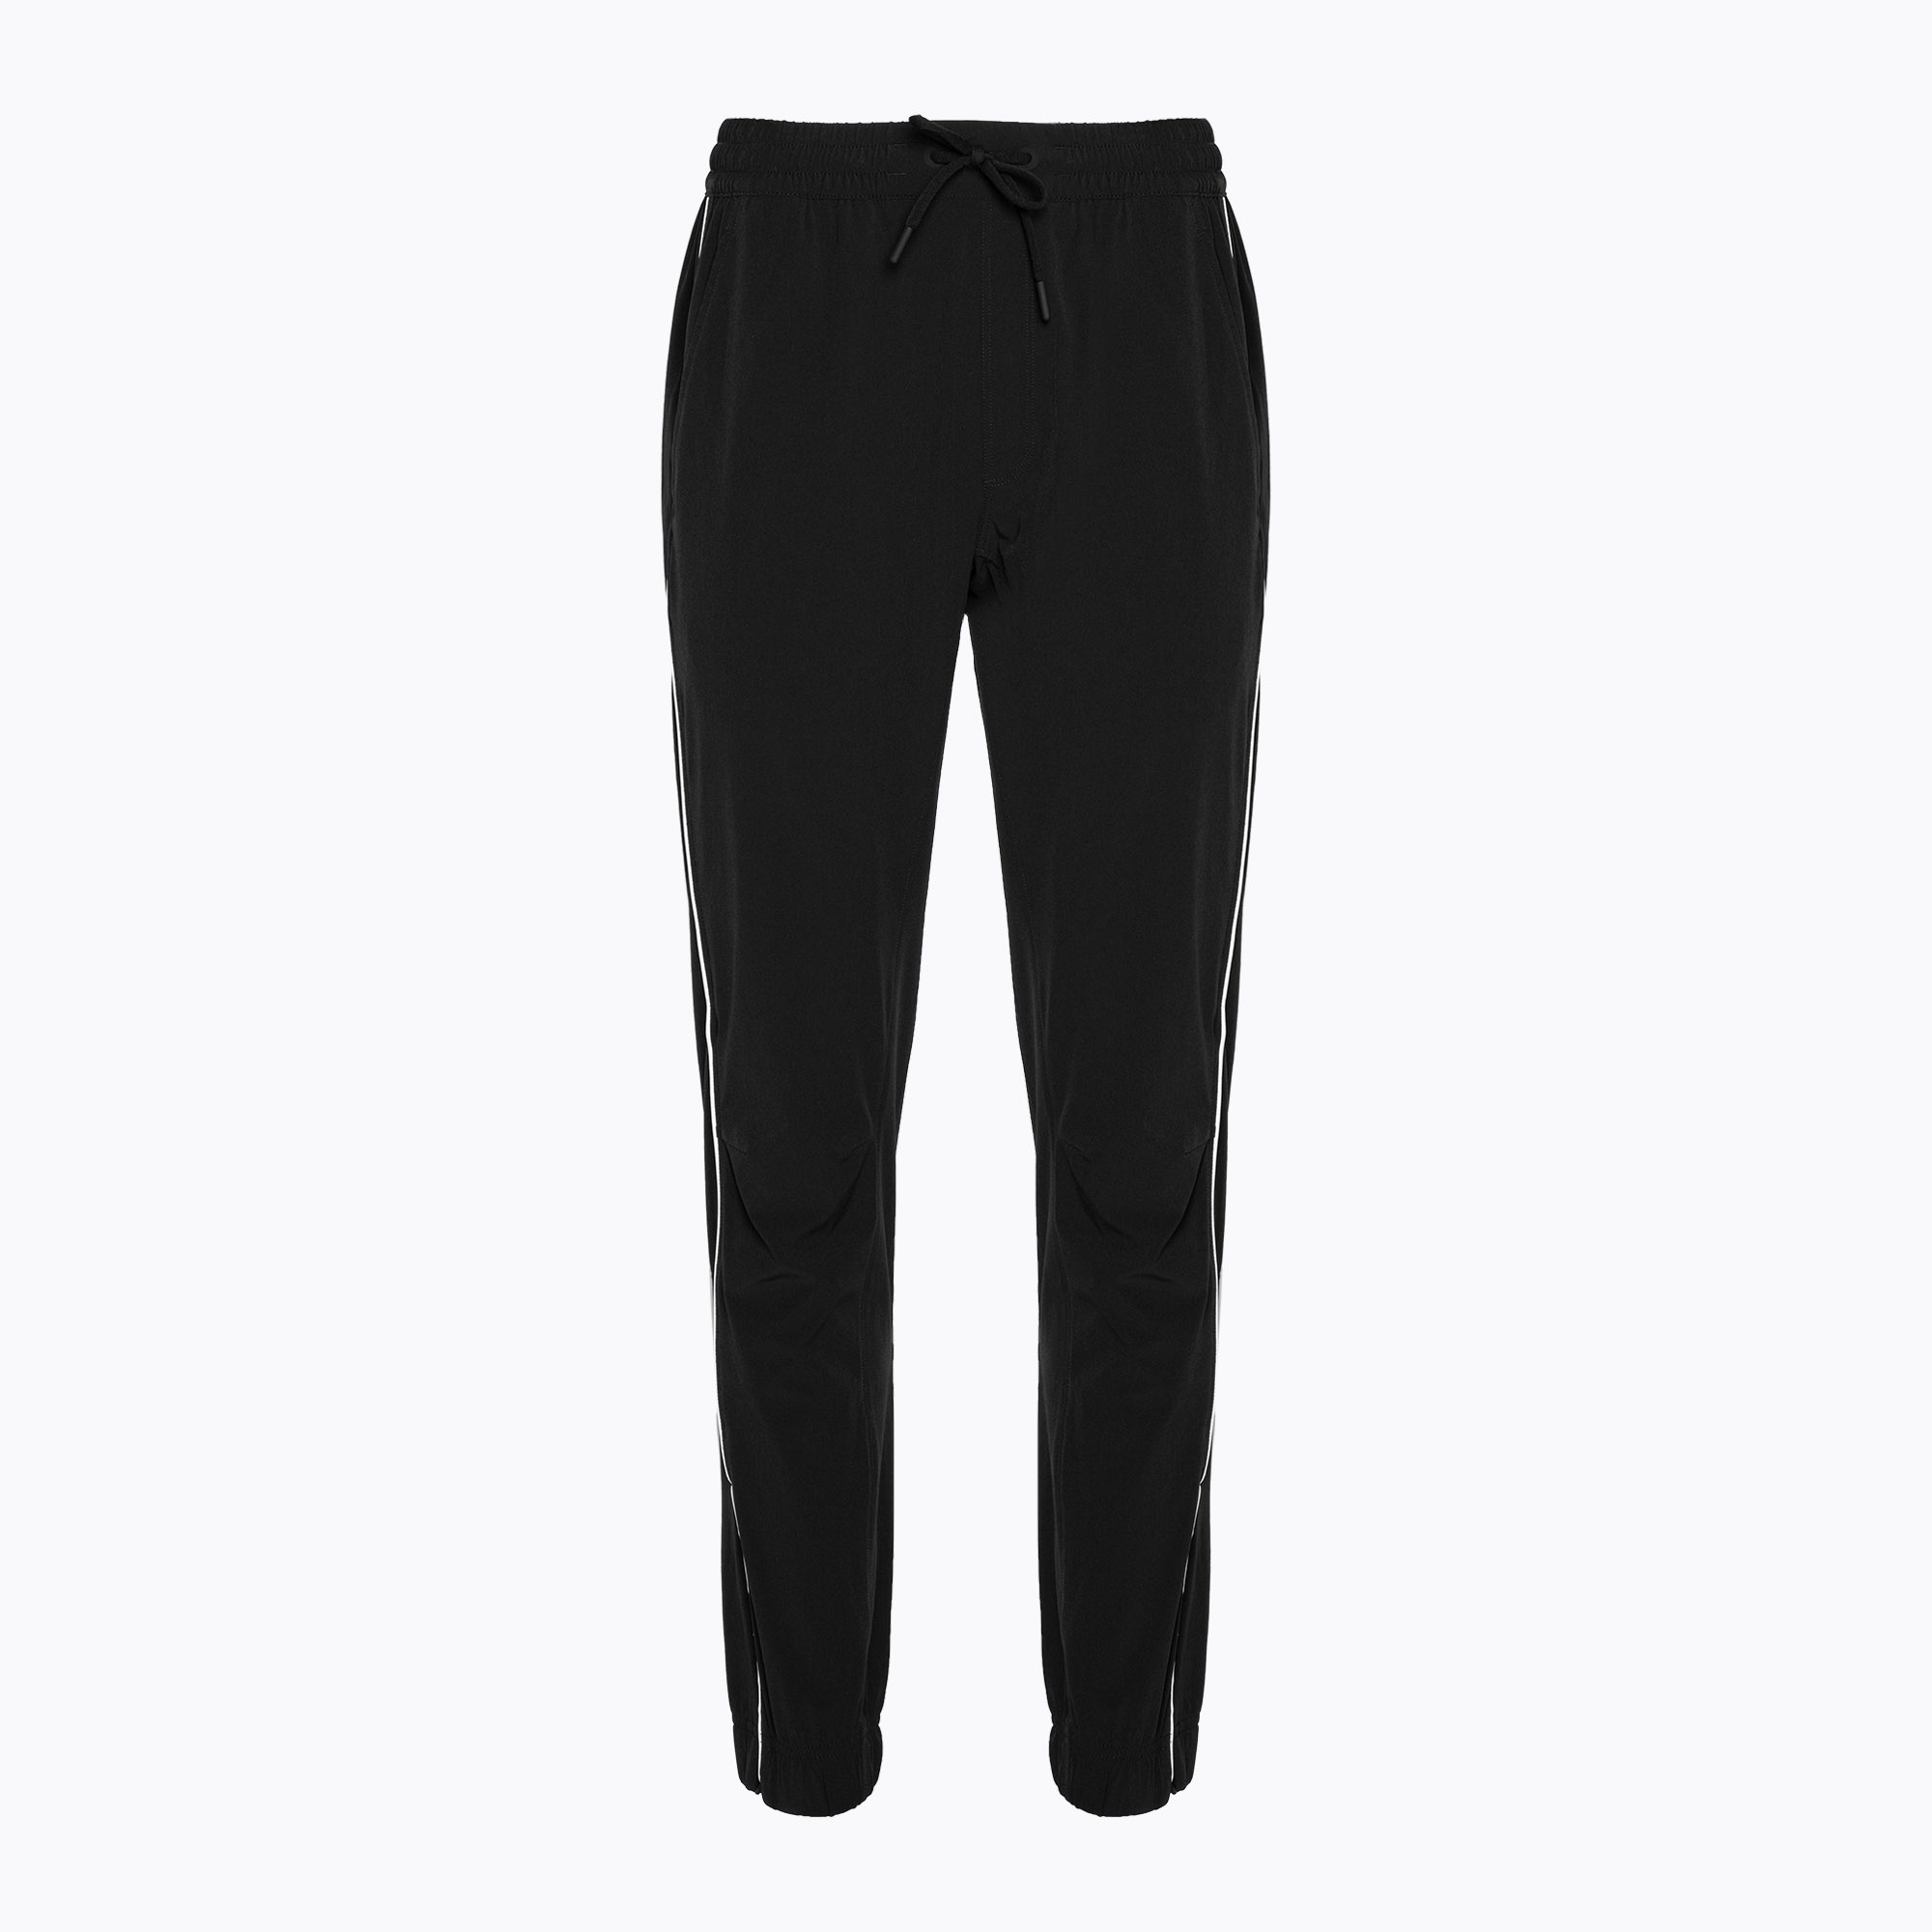 Pantaloni pentru femei Wilson Team Warm-Up negru